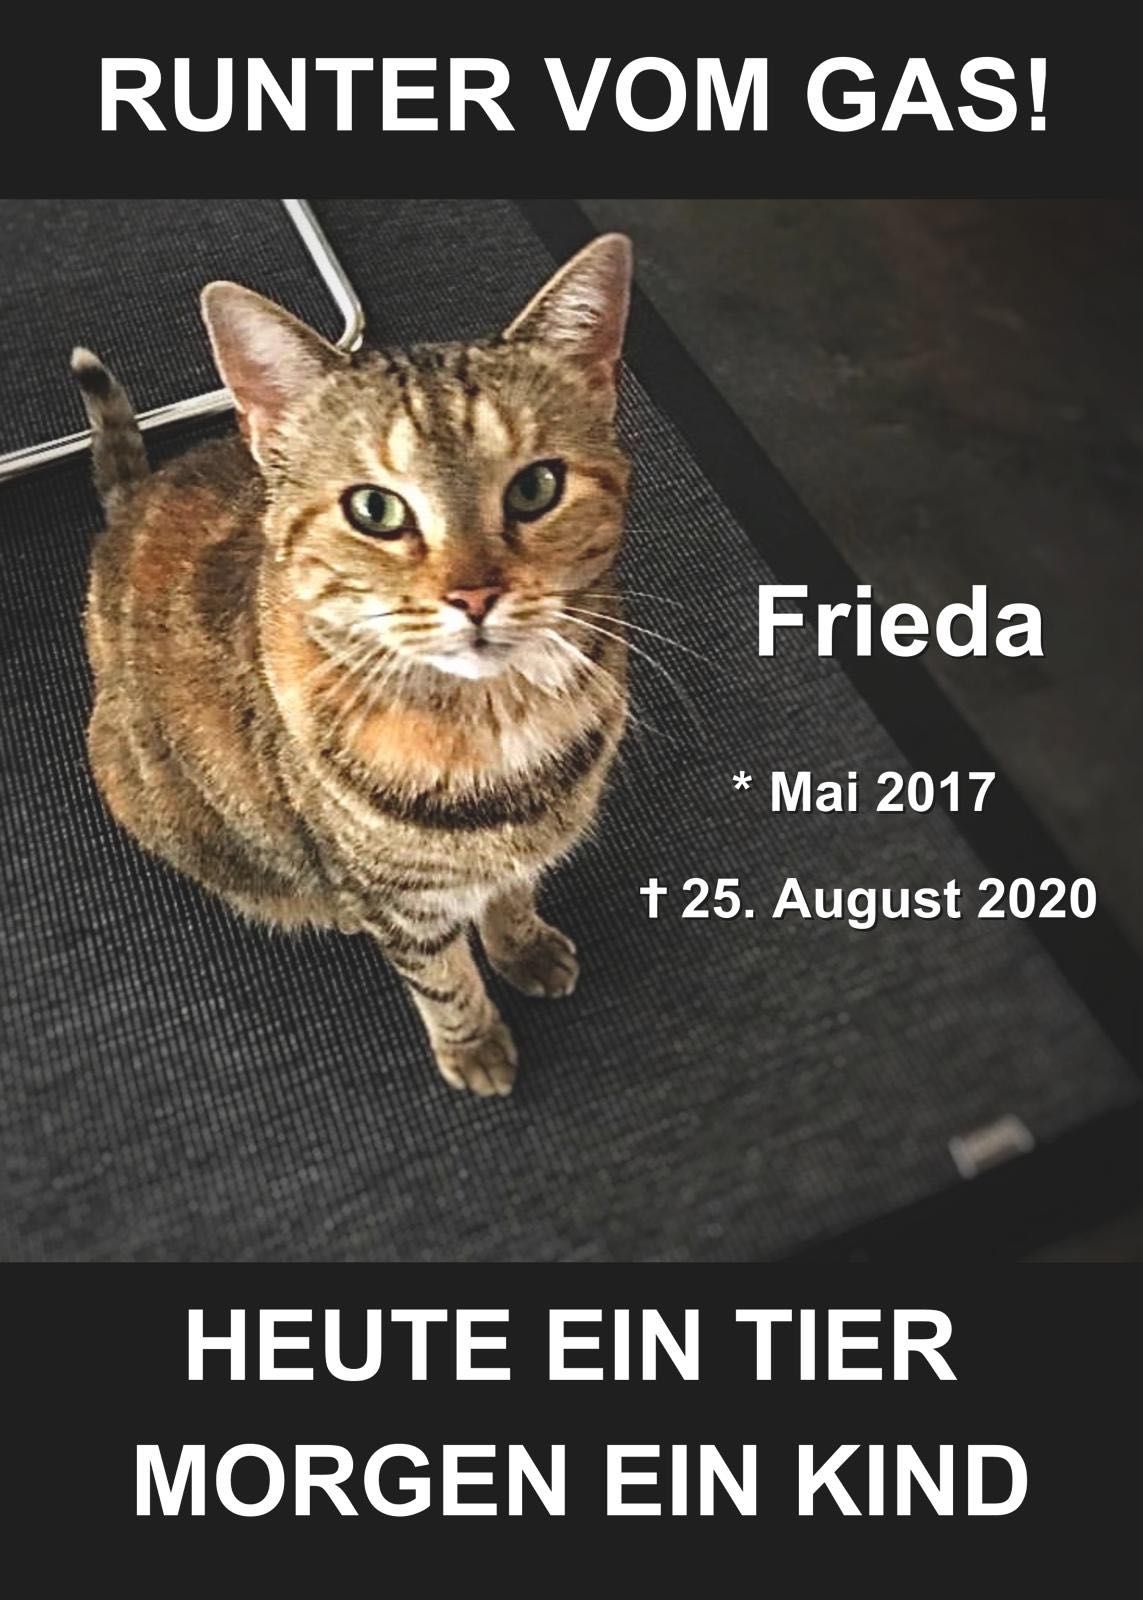 Tod der Katze Frieda als Ermahnung